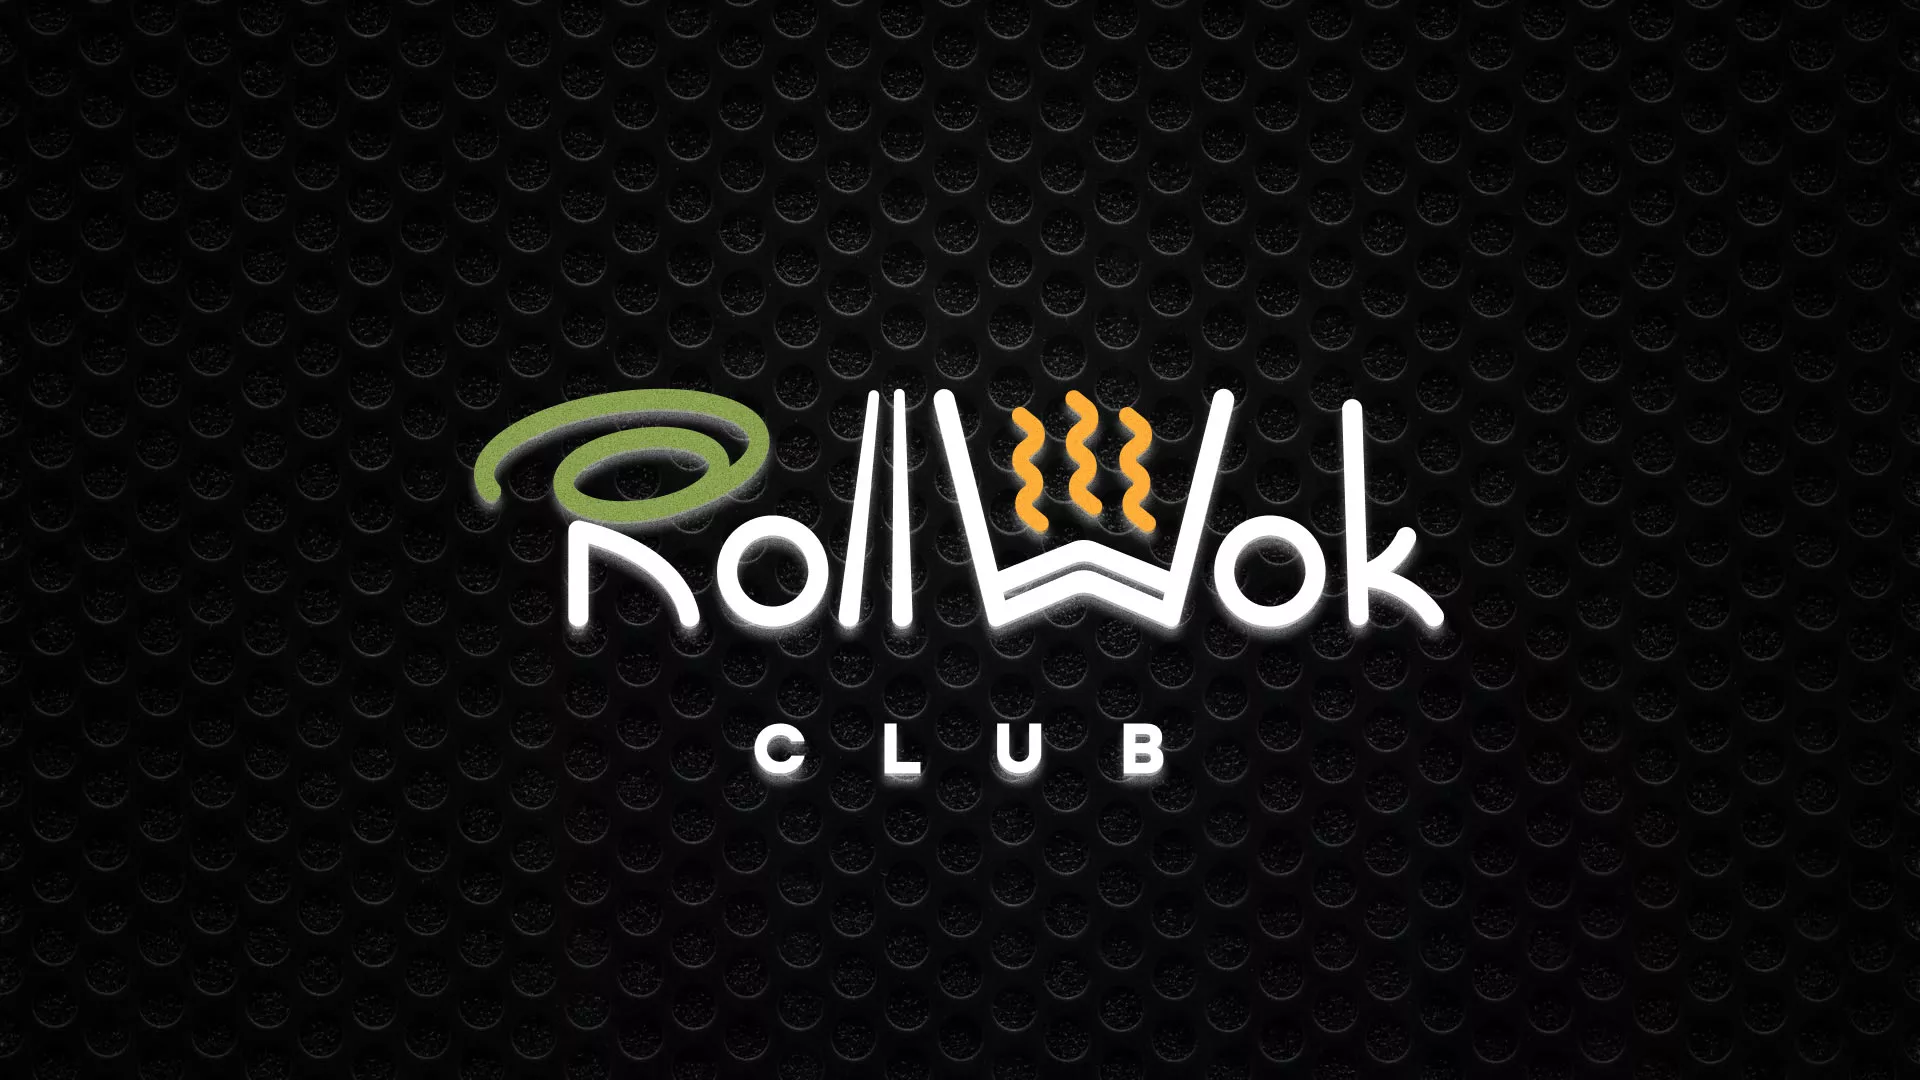 Брендирование торговых точек суши-бара «Roll Wok Club» в Борисоглебске